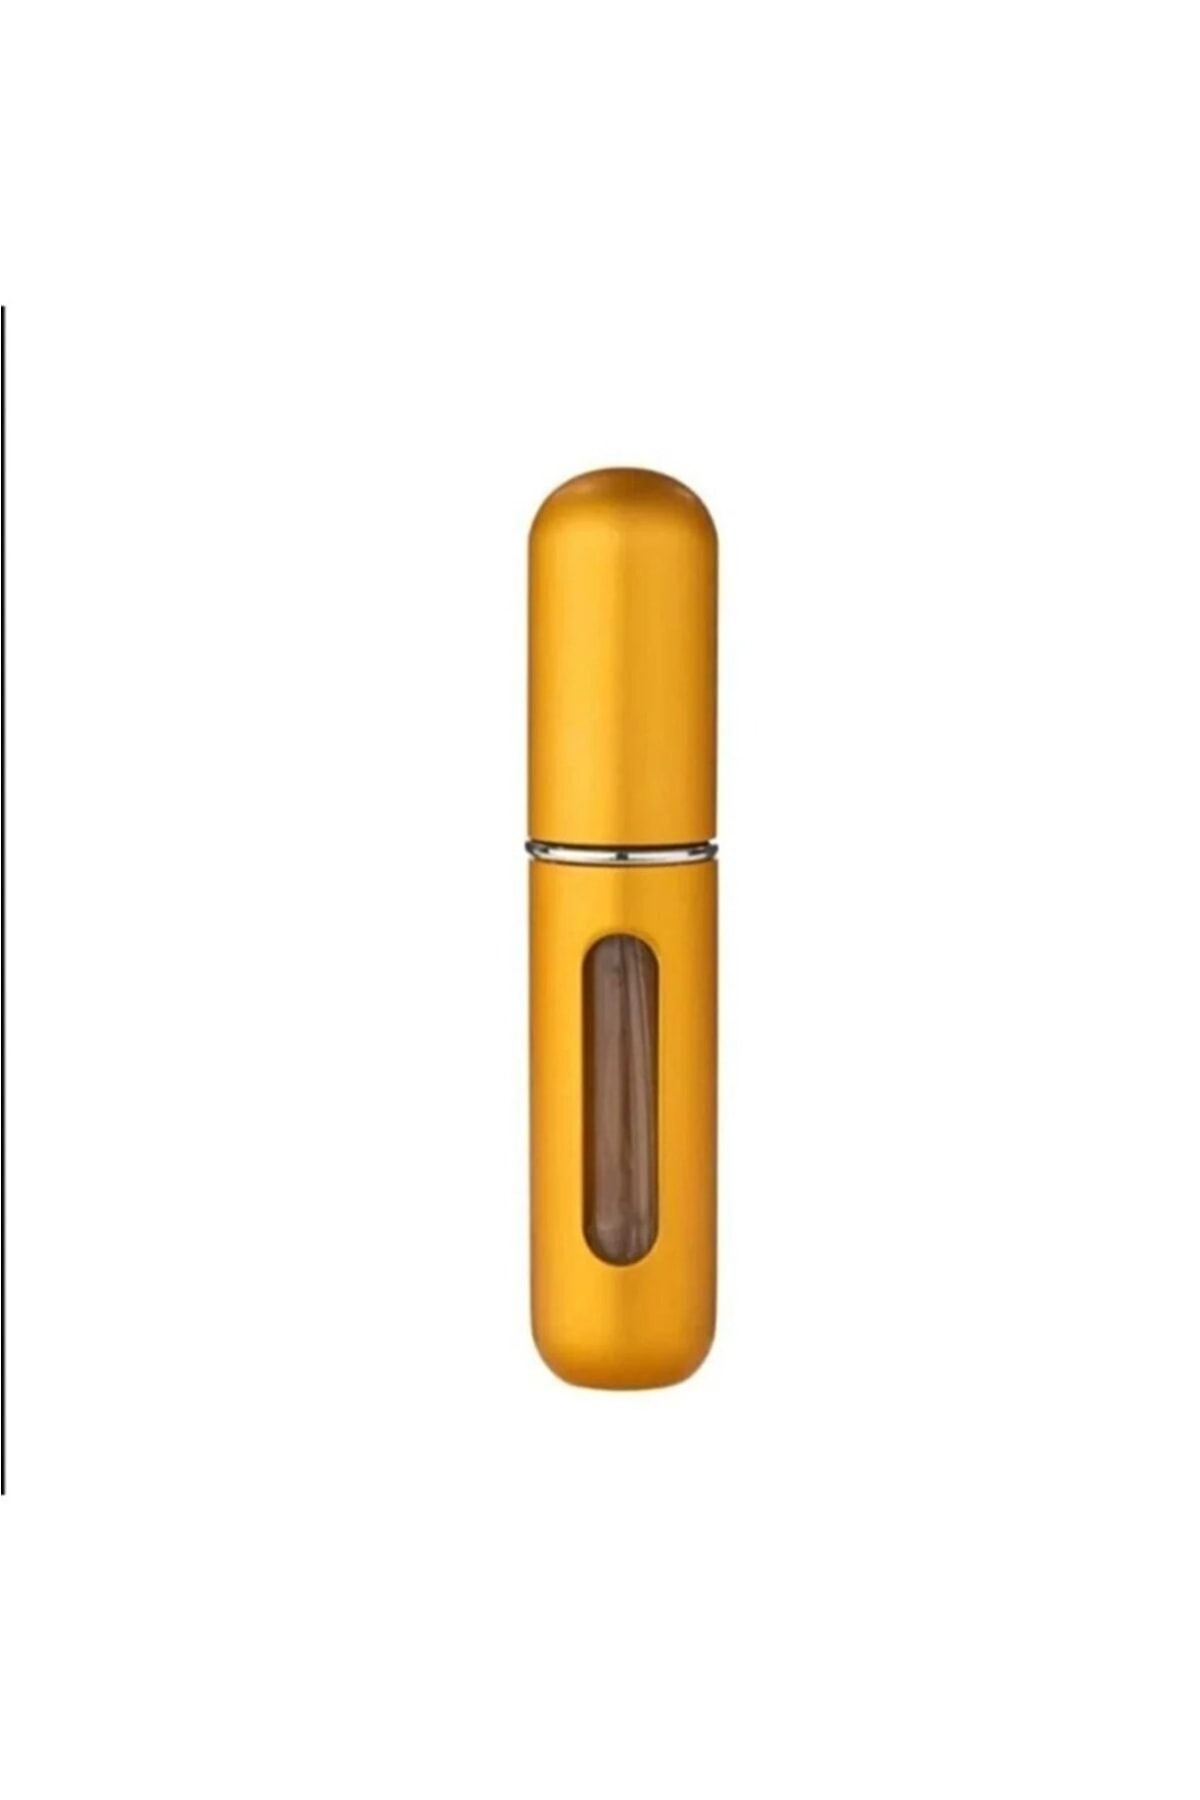 Dream Plus Gold Cep Parfüm Şişesi Atomizer Seyahat Parfüm Şişesi Cep Kolonya Şişesi 5 Ml